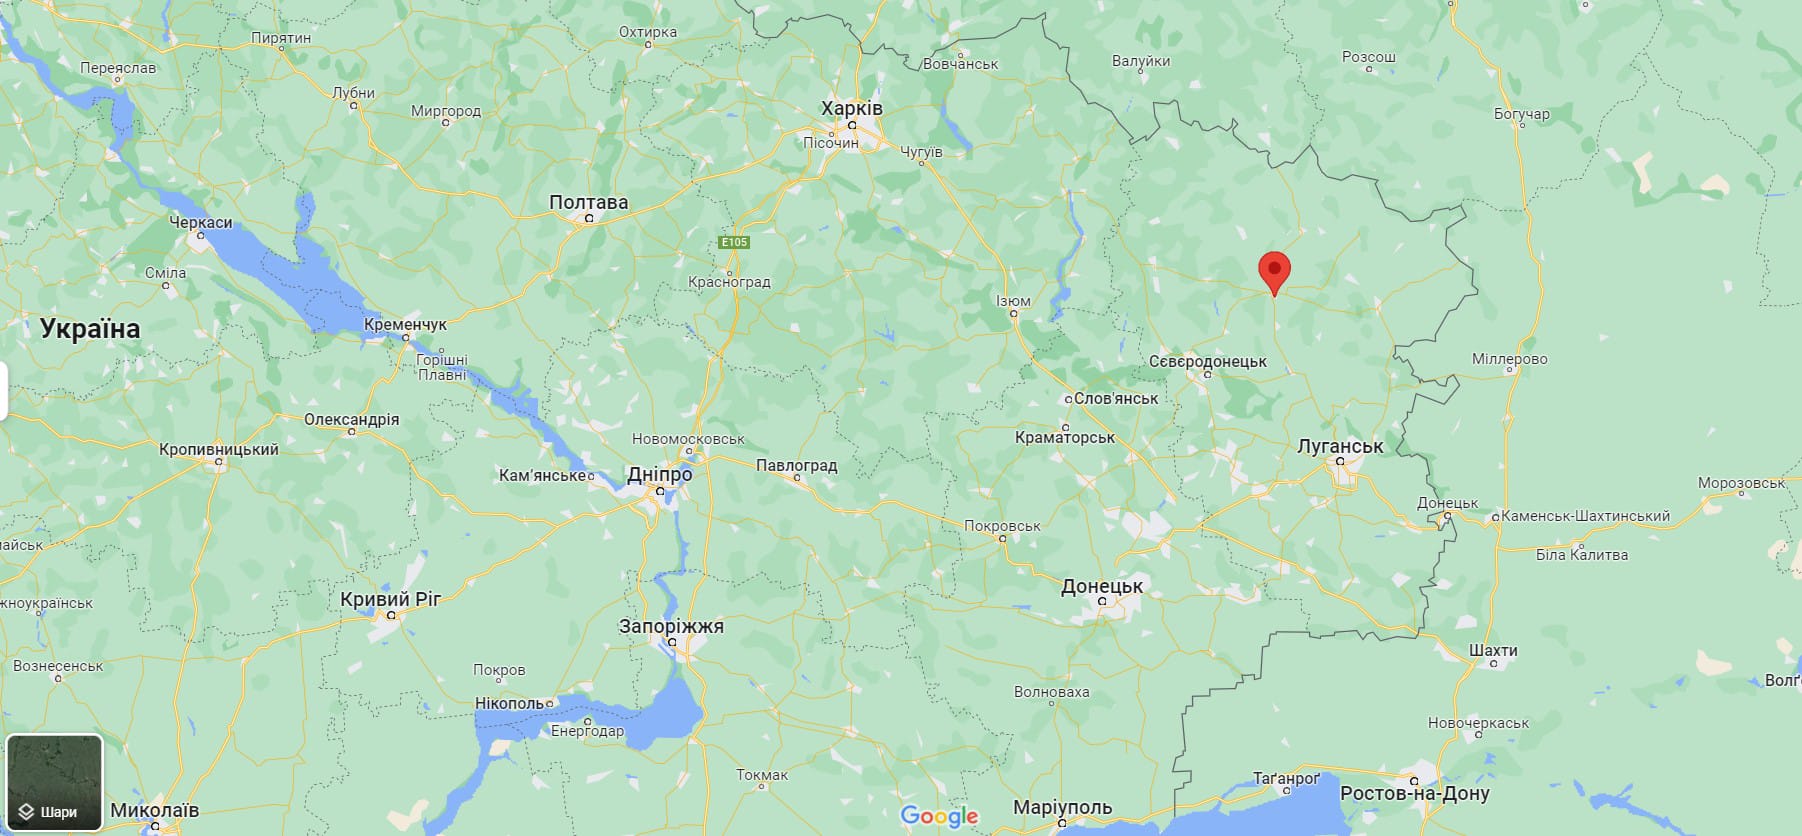 В Луганской области идут тяжелые бои: уничтожены два российских танка и 1 БТР